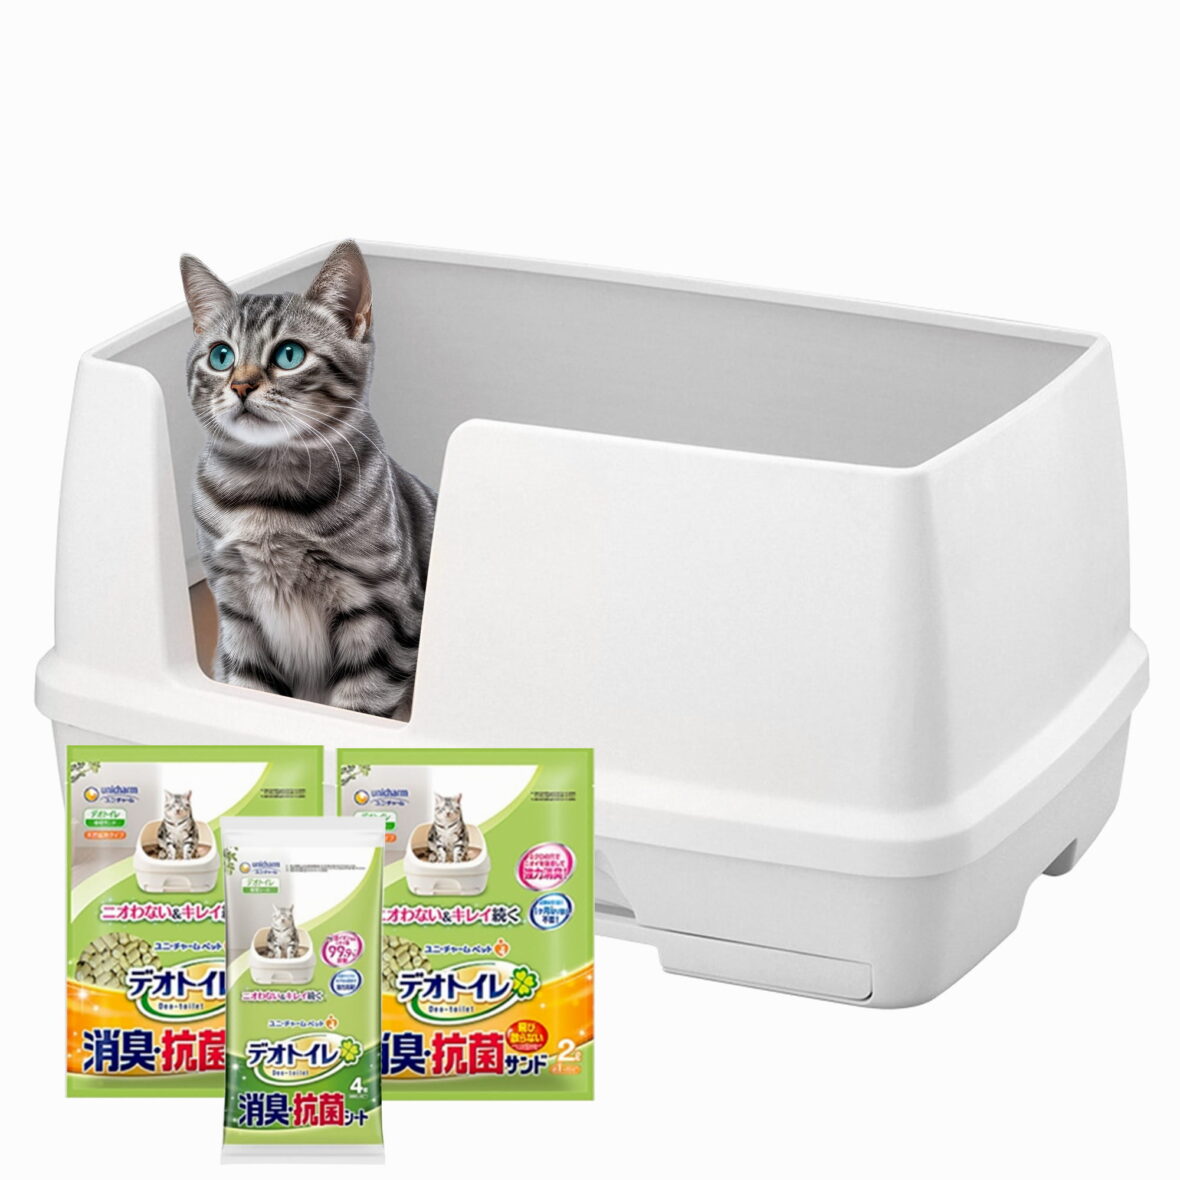 XL двухуровневый кошачий туалет (комплект: лоток + гранулы 2 X 1,6 кг + 4 пеленки) Оригинальная версия Tidy Cats Breeze cat litter box Big XL из Японии (Японский кошачий туалет)